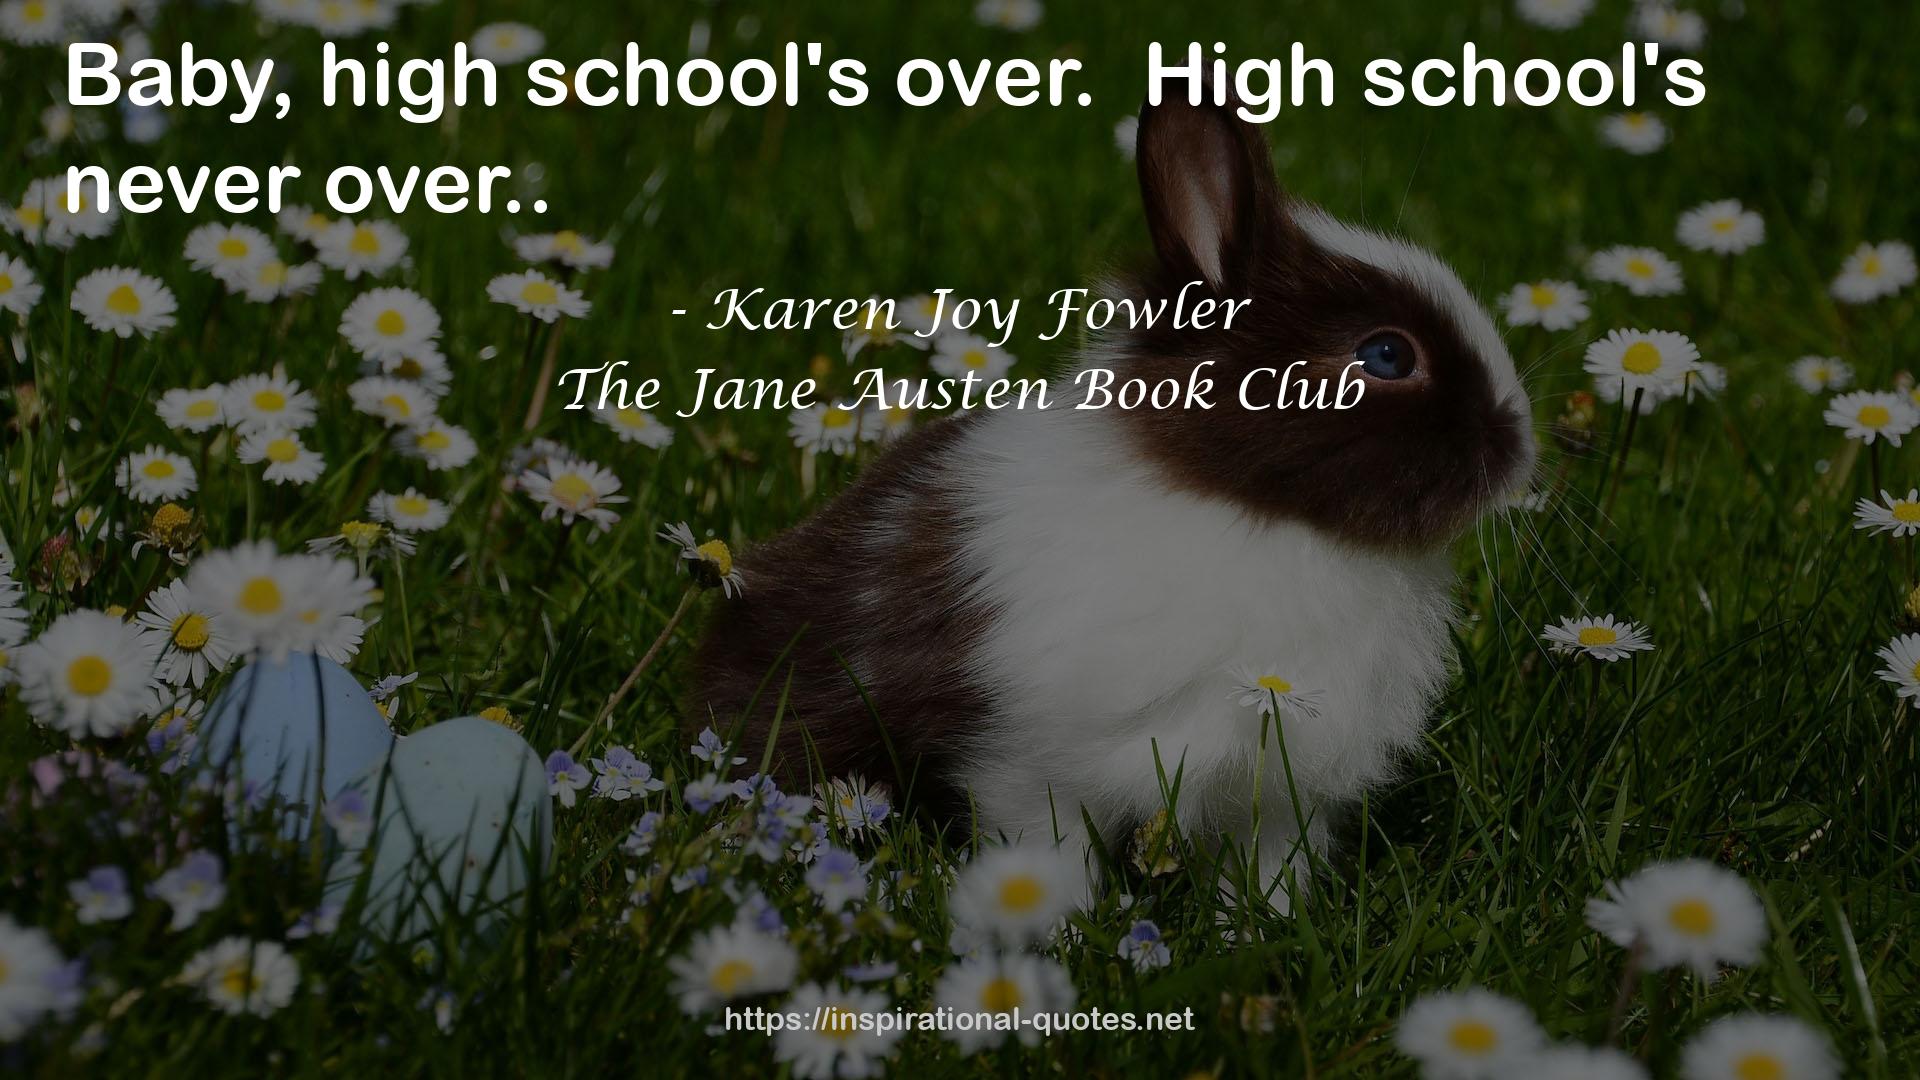 The Jane Austen Book Club QUOTES